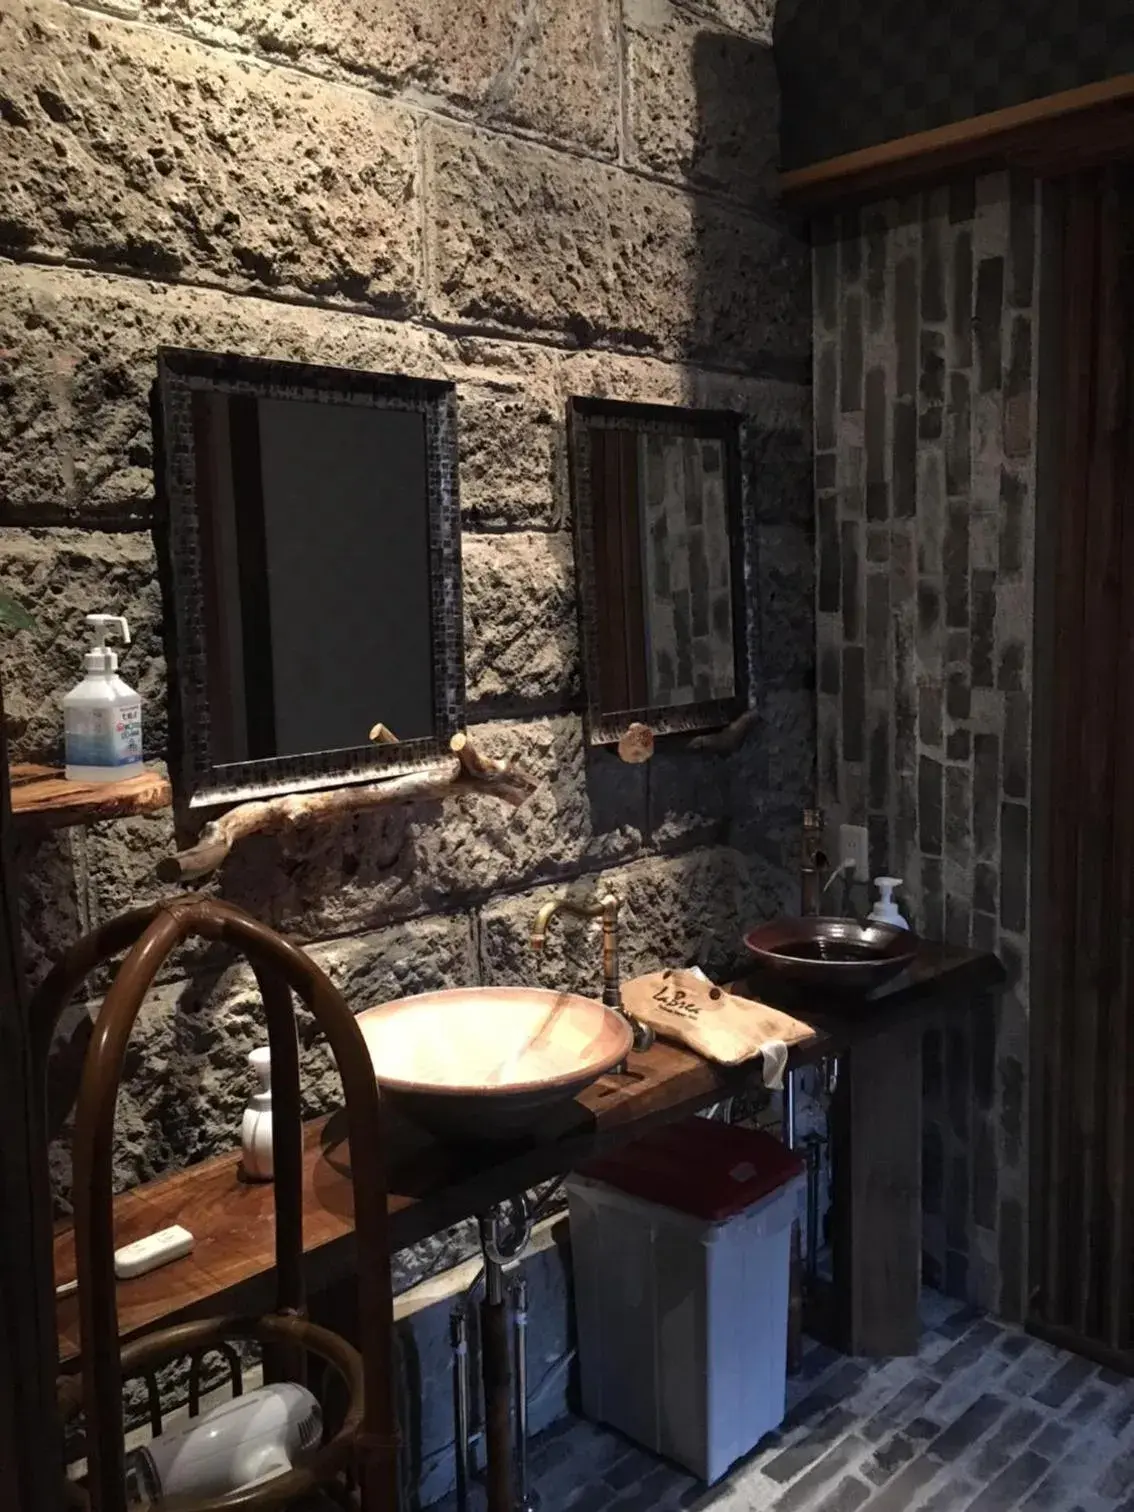 Bathroom in Nikko Park Lodge Tobu Station